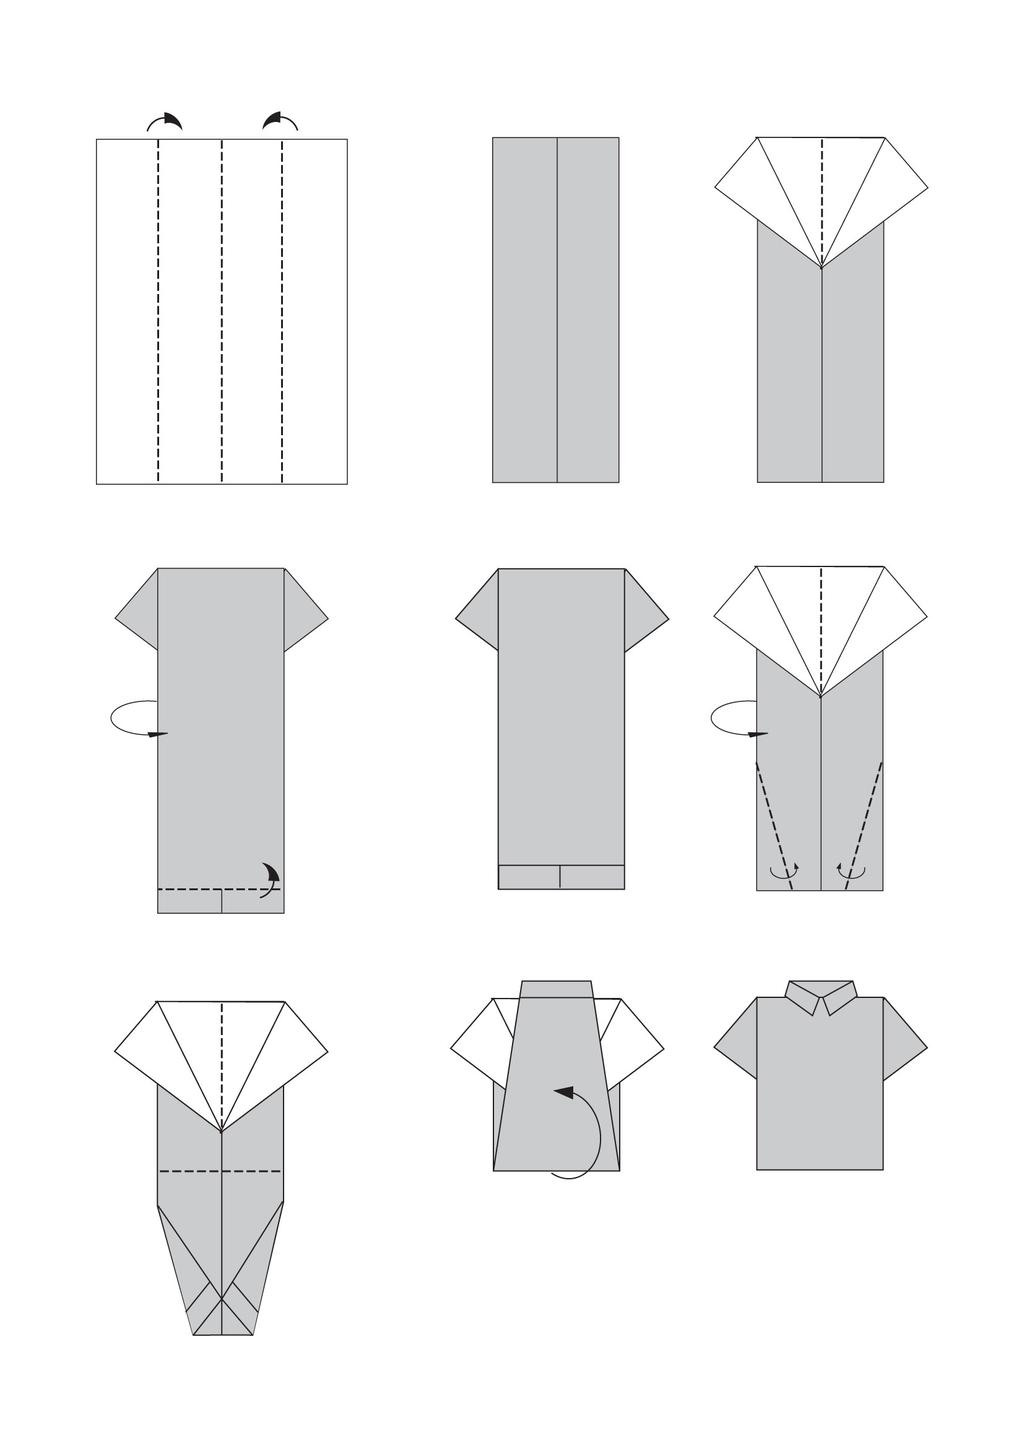 Как сделать из бумаги рубашку: Самый простой вариант сделать рубашку-оригами